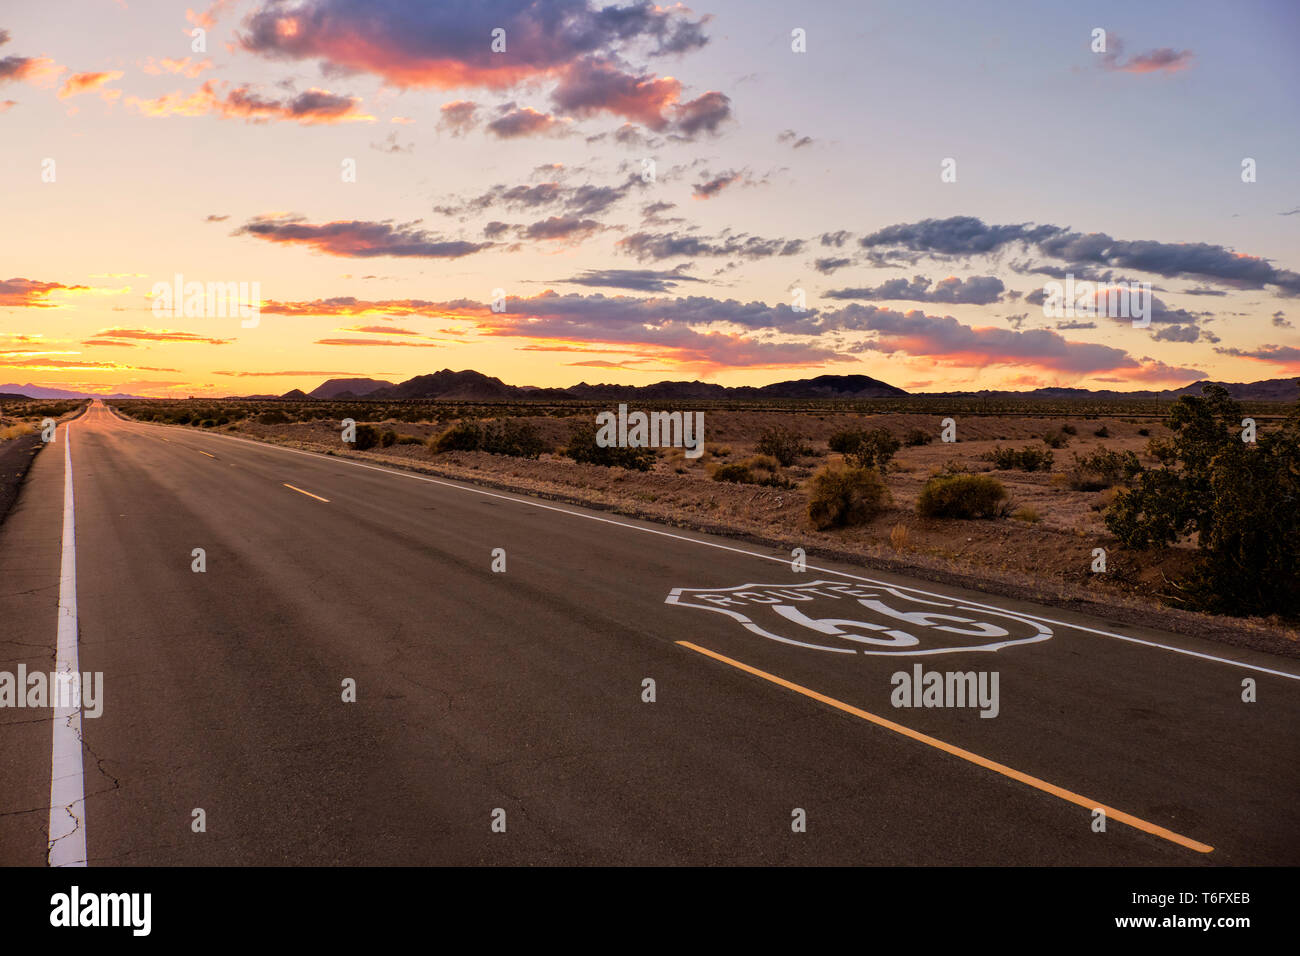 Dramatischer Sonnenuntergang über Route 66 mit der offenen Straße in die Mojave Wüste geht, während auf Ferien Reise in Südkalifornien. Stockfoto